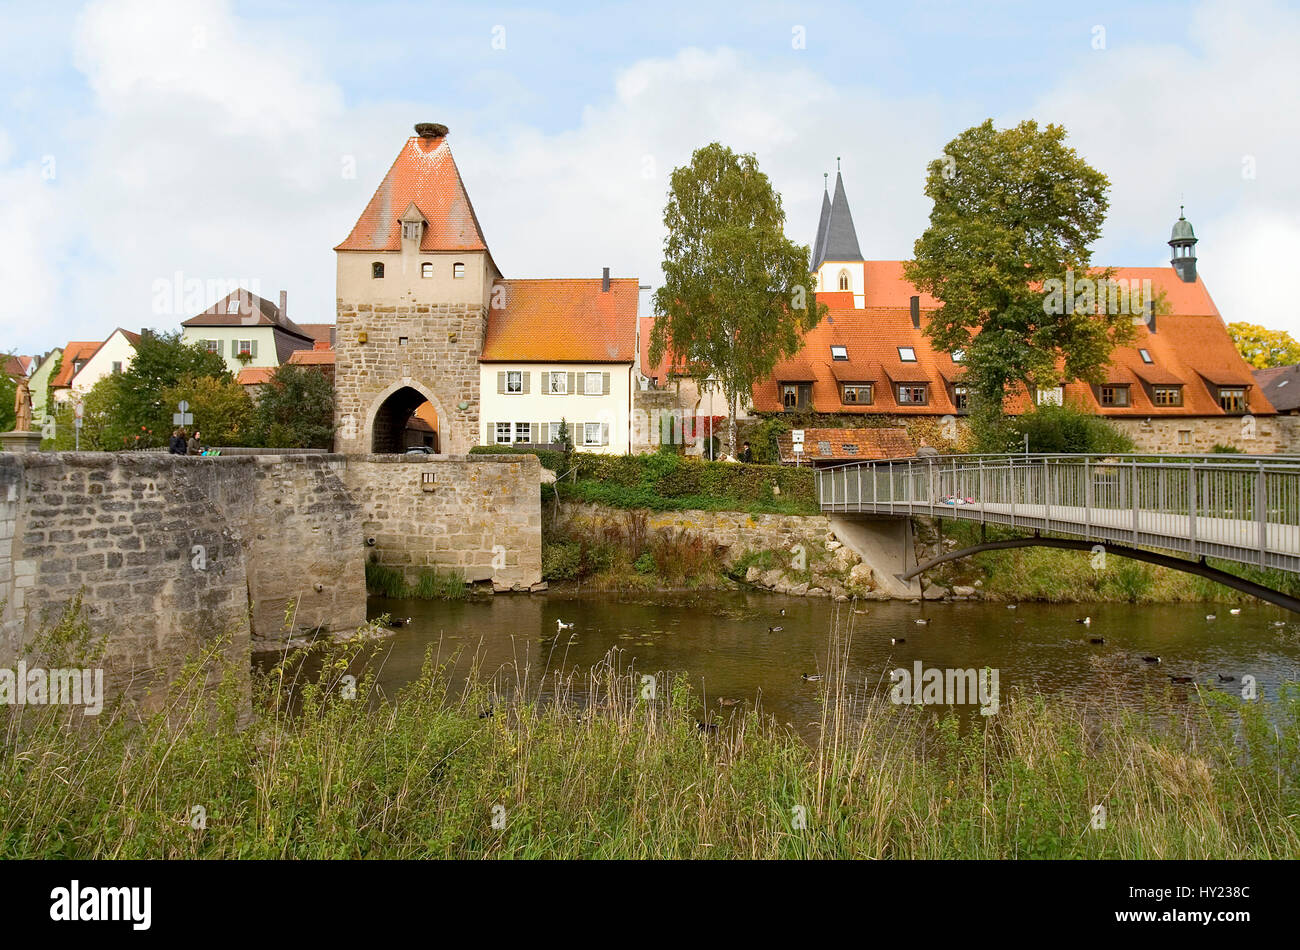 Image de la pont traditionnel à l'entrée de la ville de Herrieden dans l'état allemand de Bade-Wurtemberg. Blick auf die mittelalterliche une BrÃ¼cke Banque D'Images